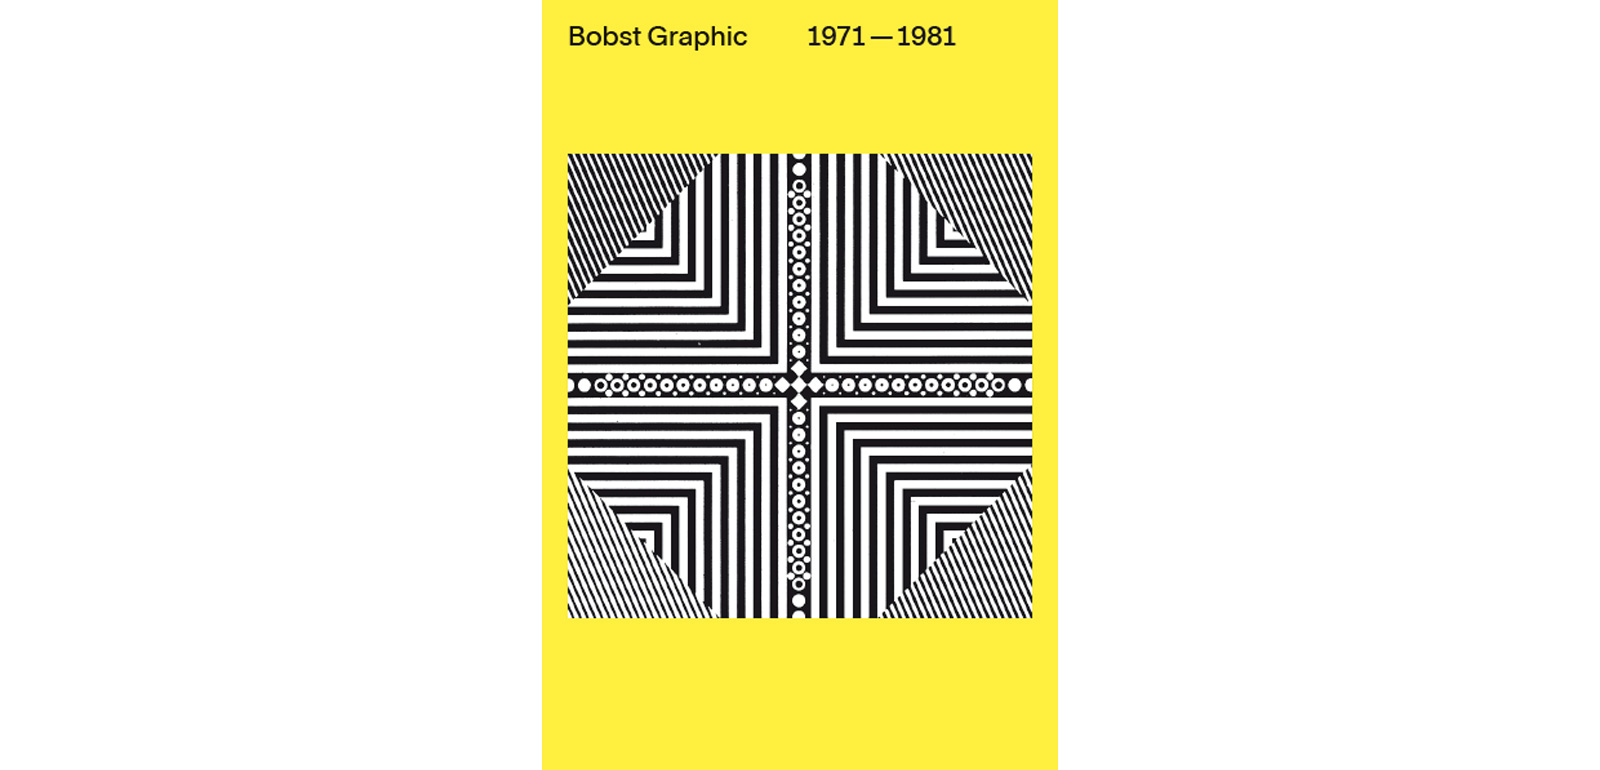 Der zweite Band der Reihe Visuelle Archive des Triest Verlags widmet sich der bislang unbekannten Firmengeschichte der Fotosatzpioniere von Bobst Graphic.